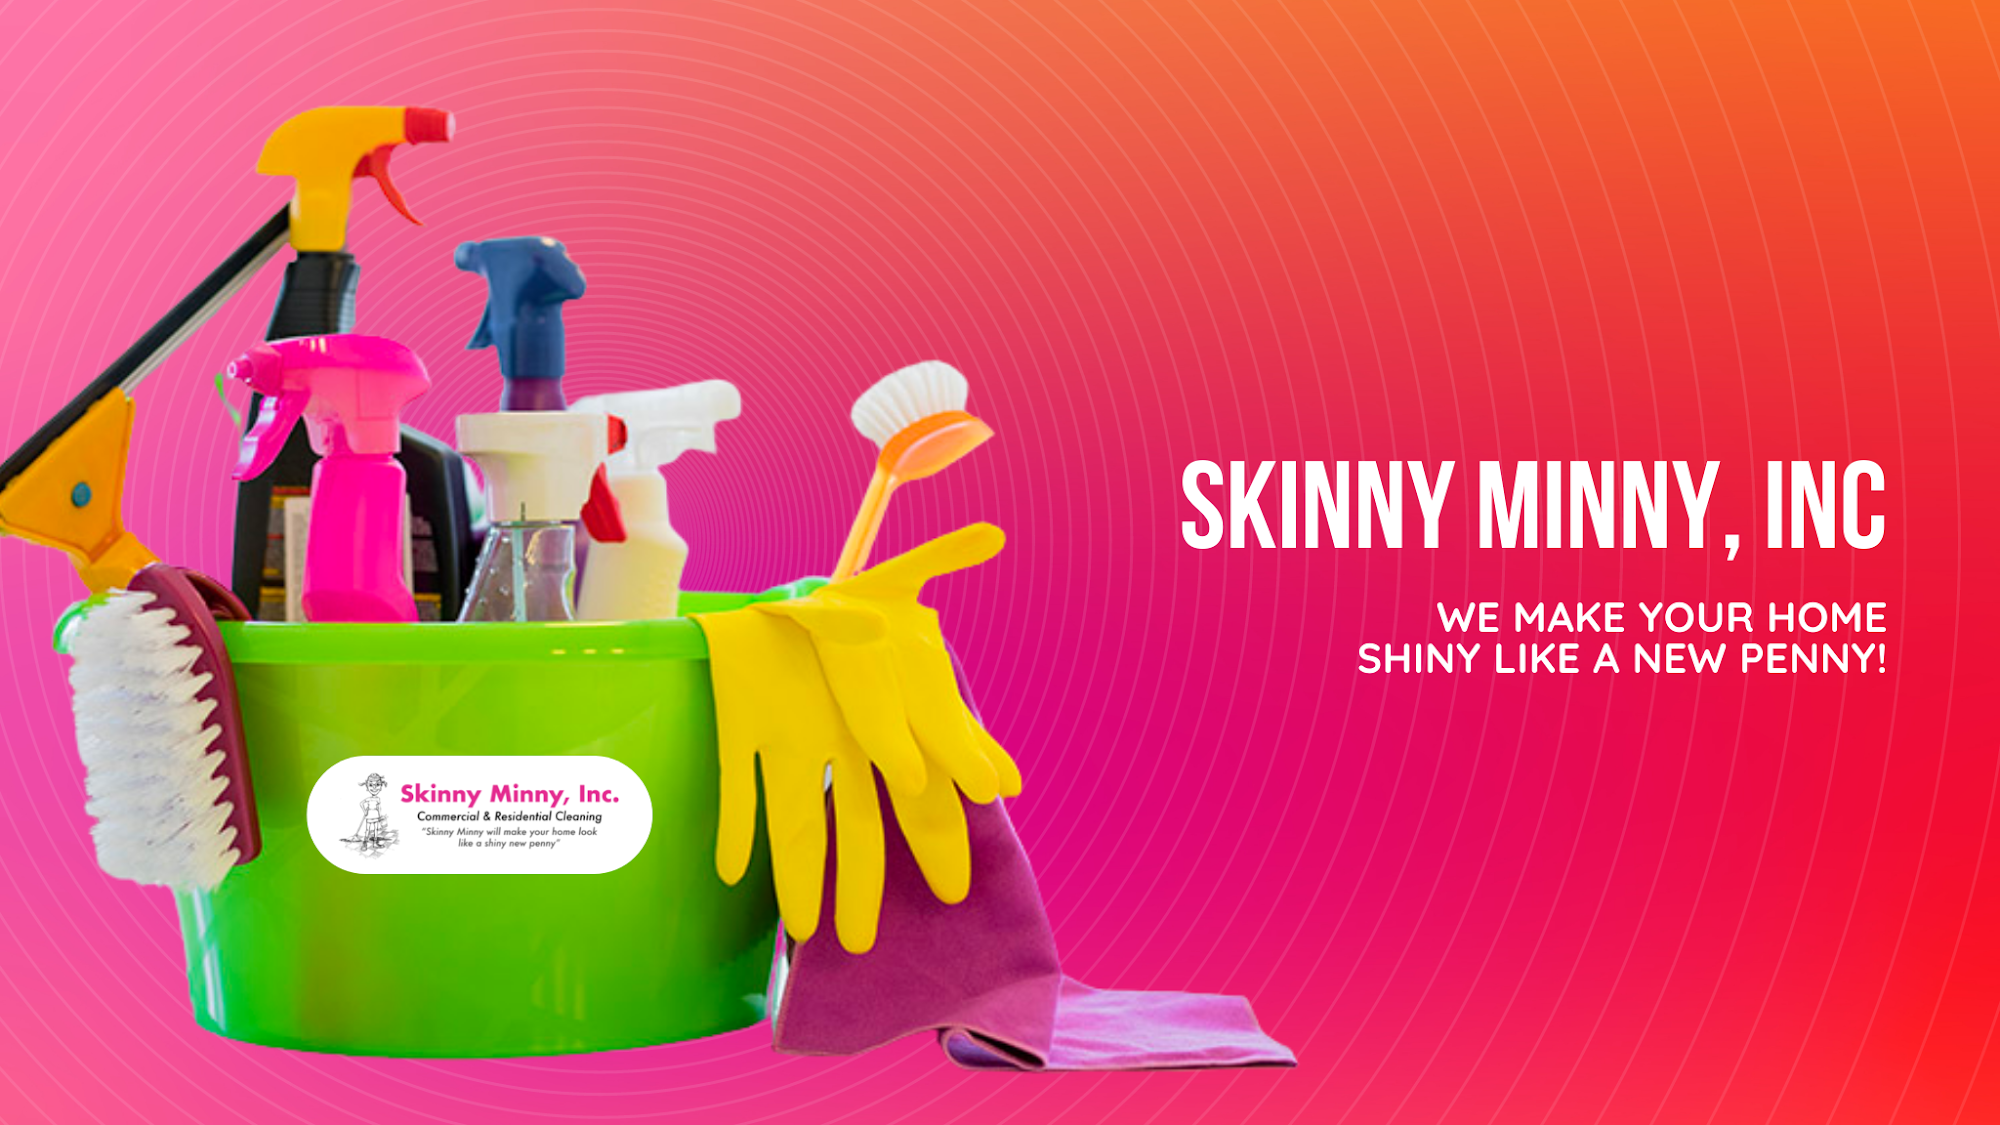 Skinny Minny, Inc.